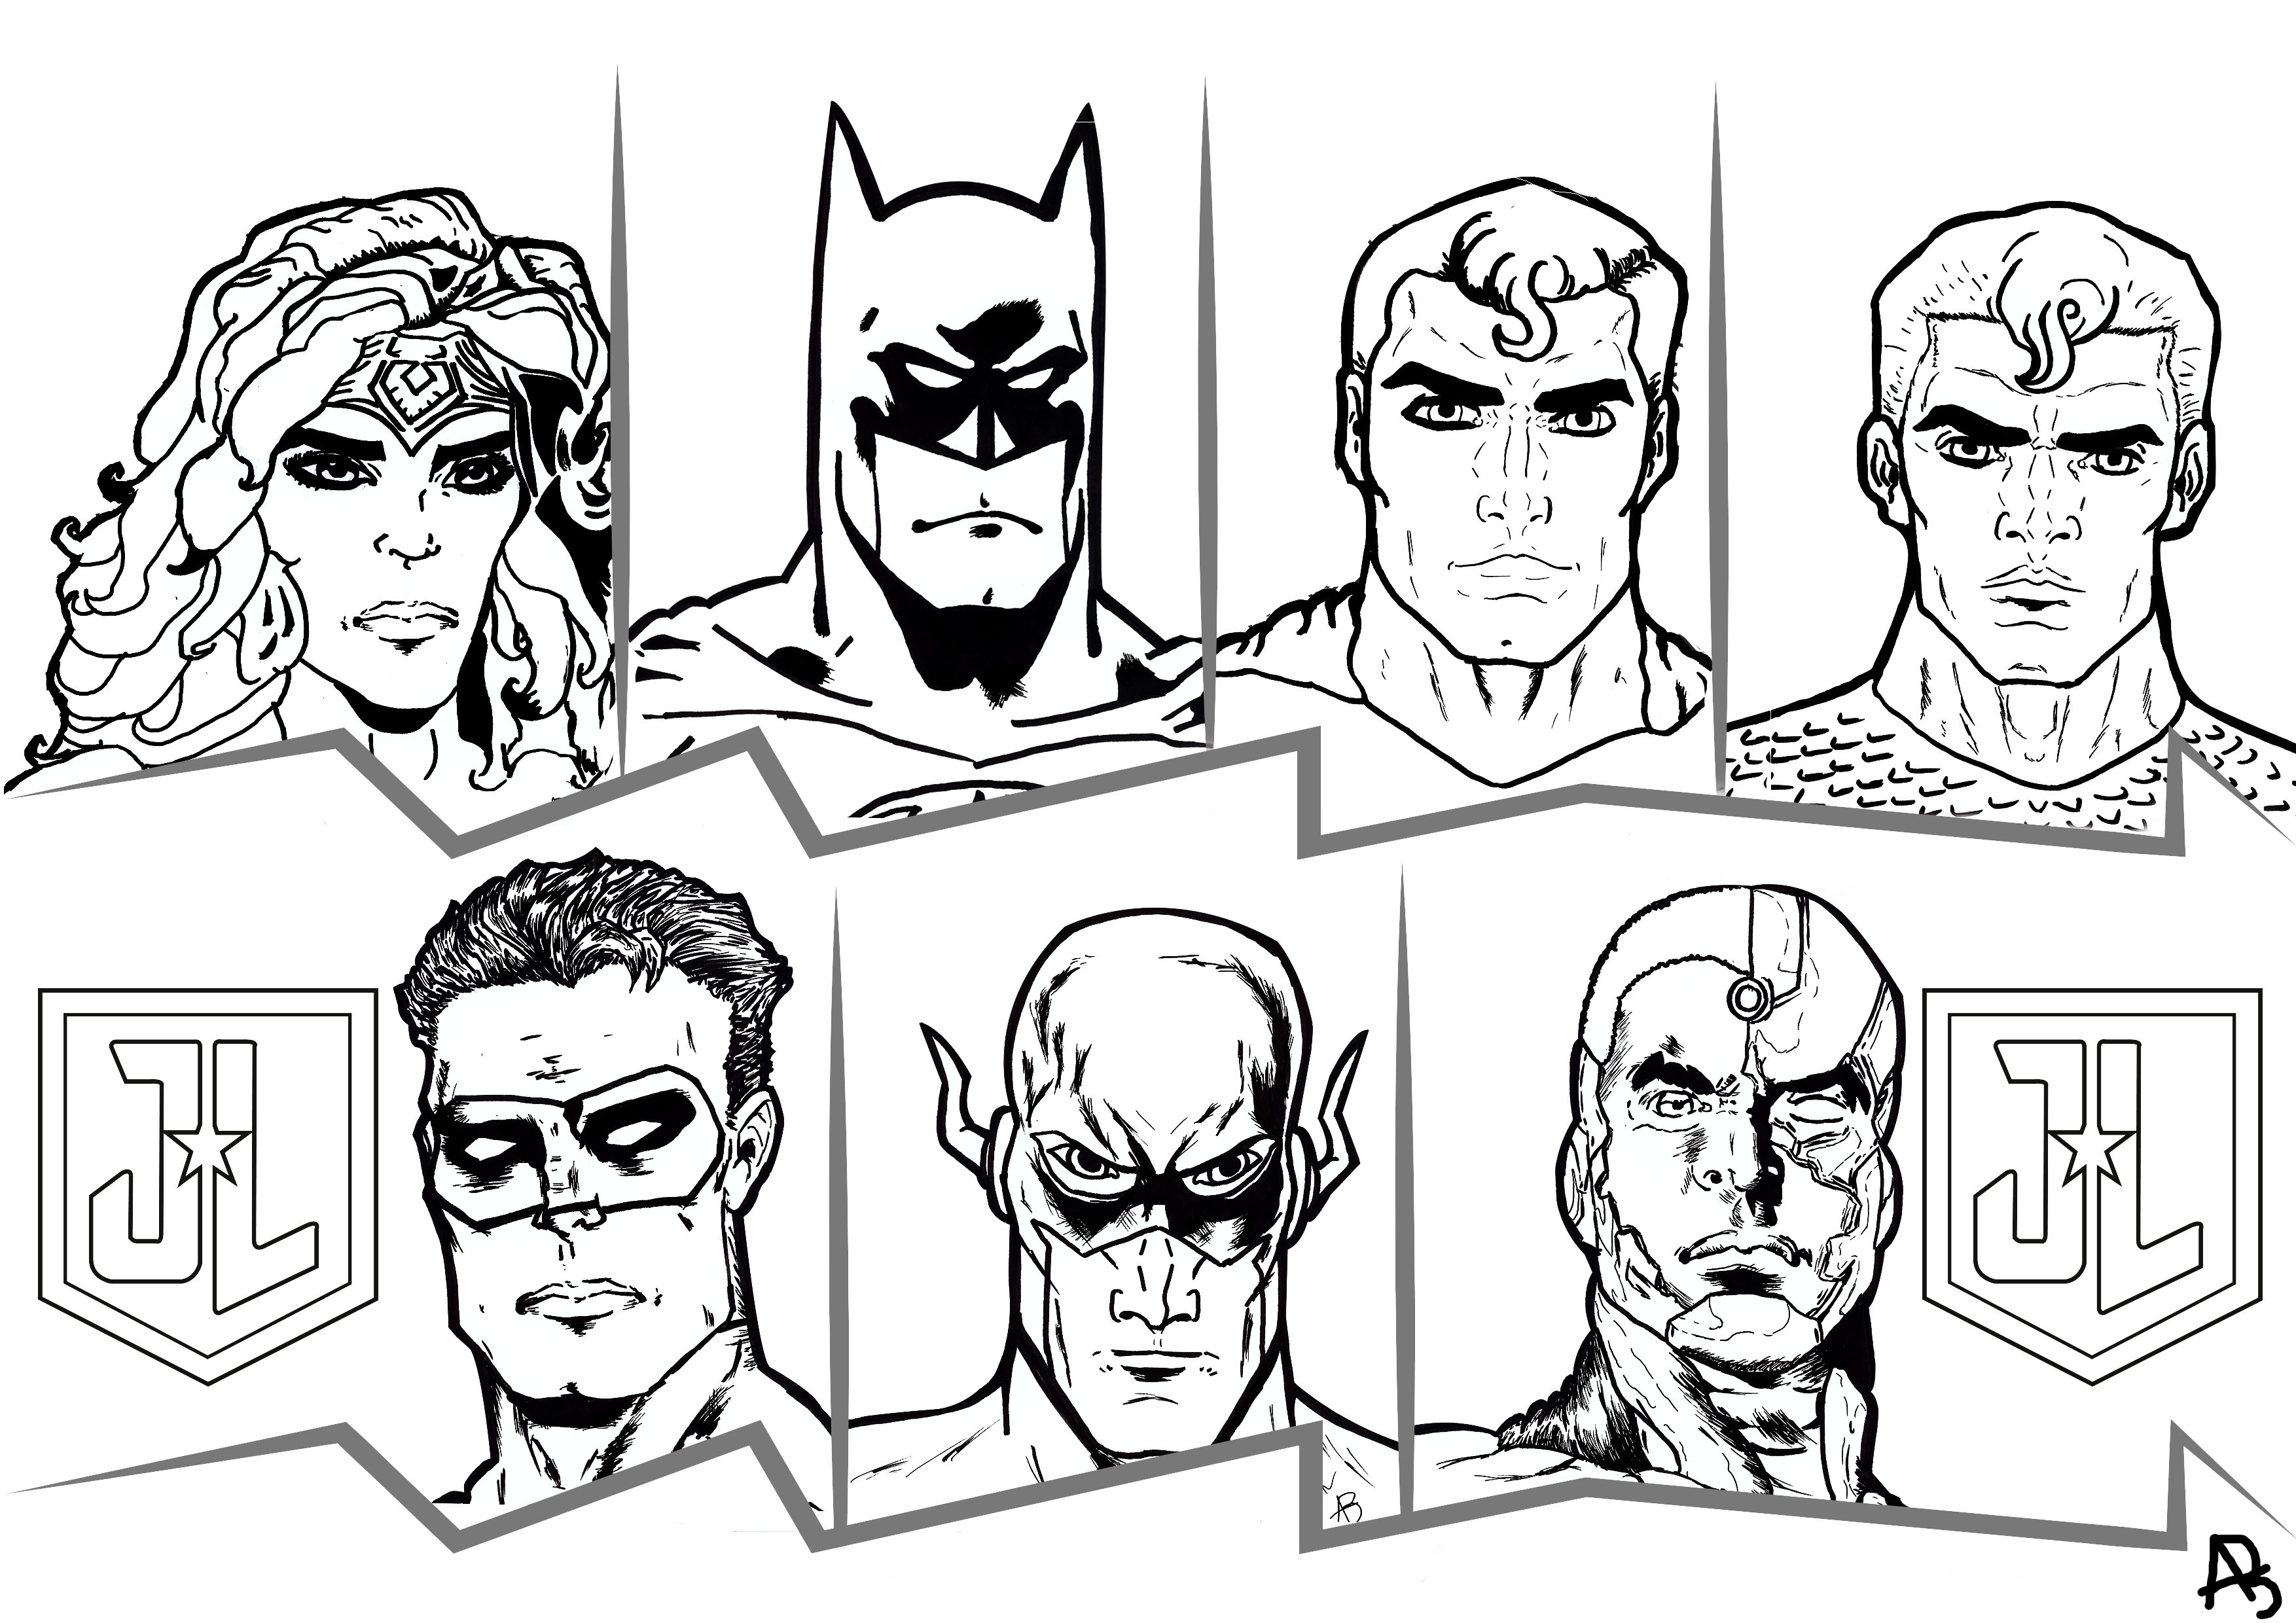 Il film Justice League è uscito nel 2017, per l'occasione abbiamo creato un'originale pagina da colorare